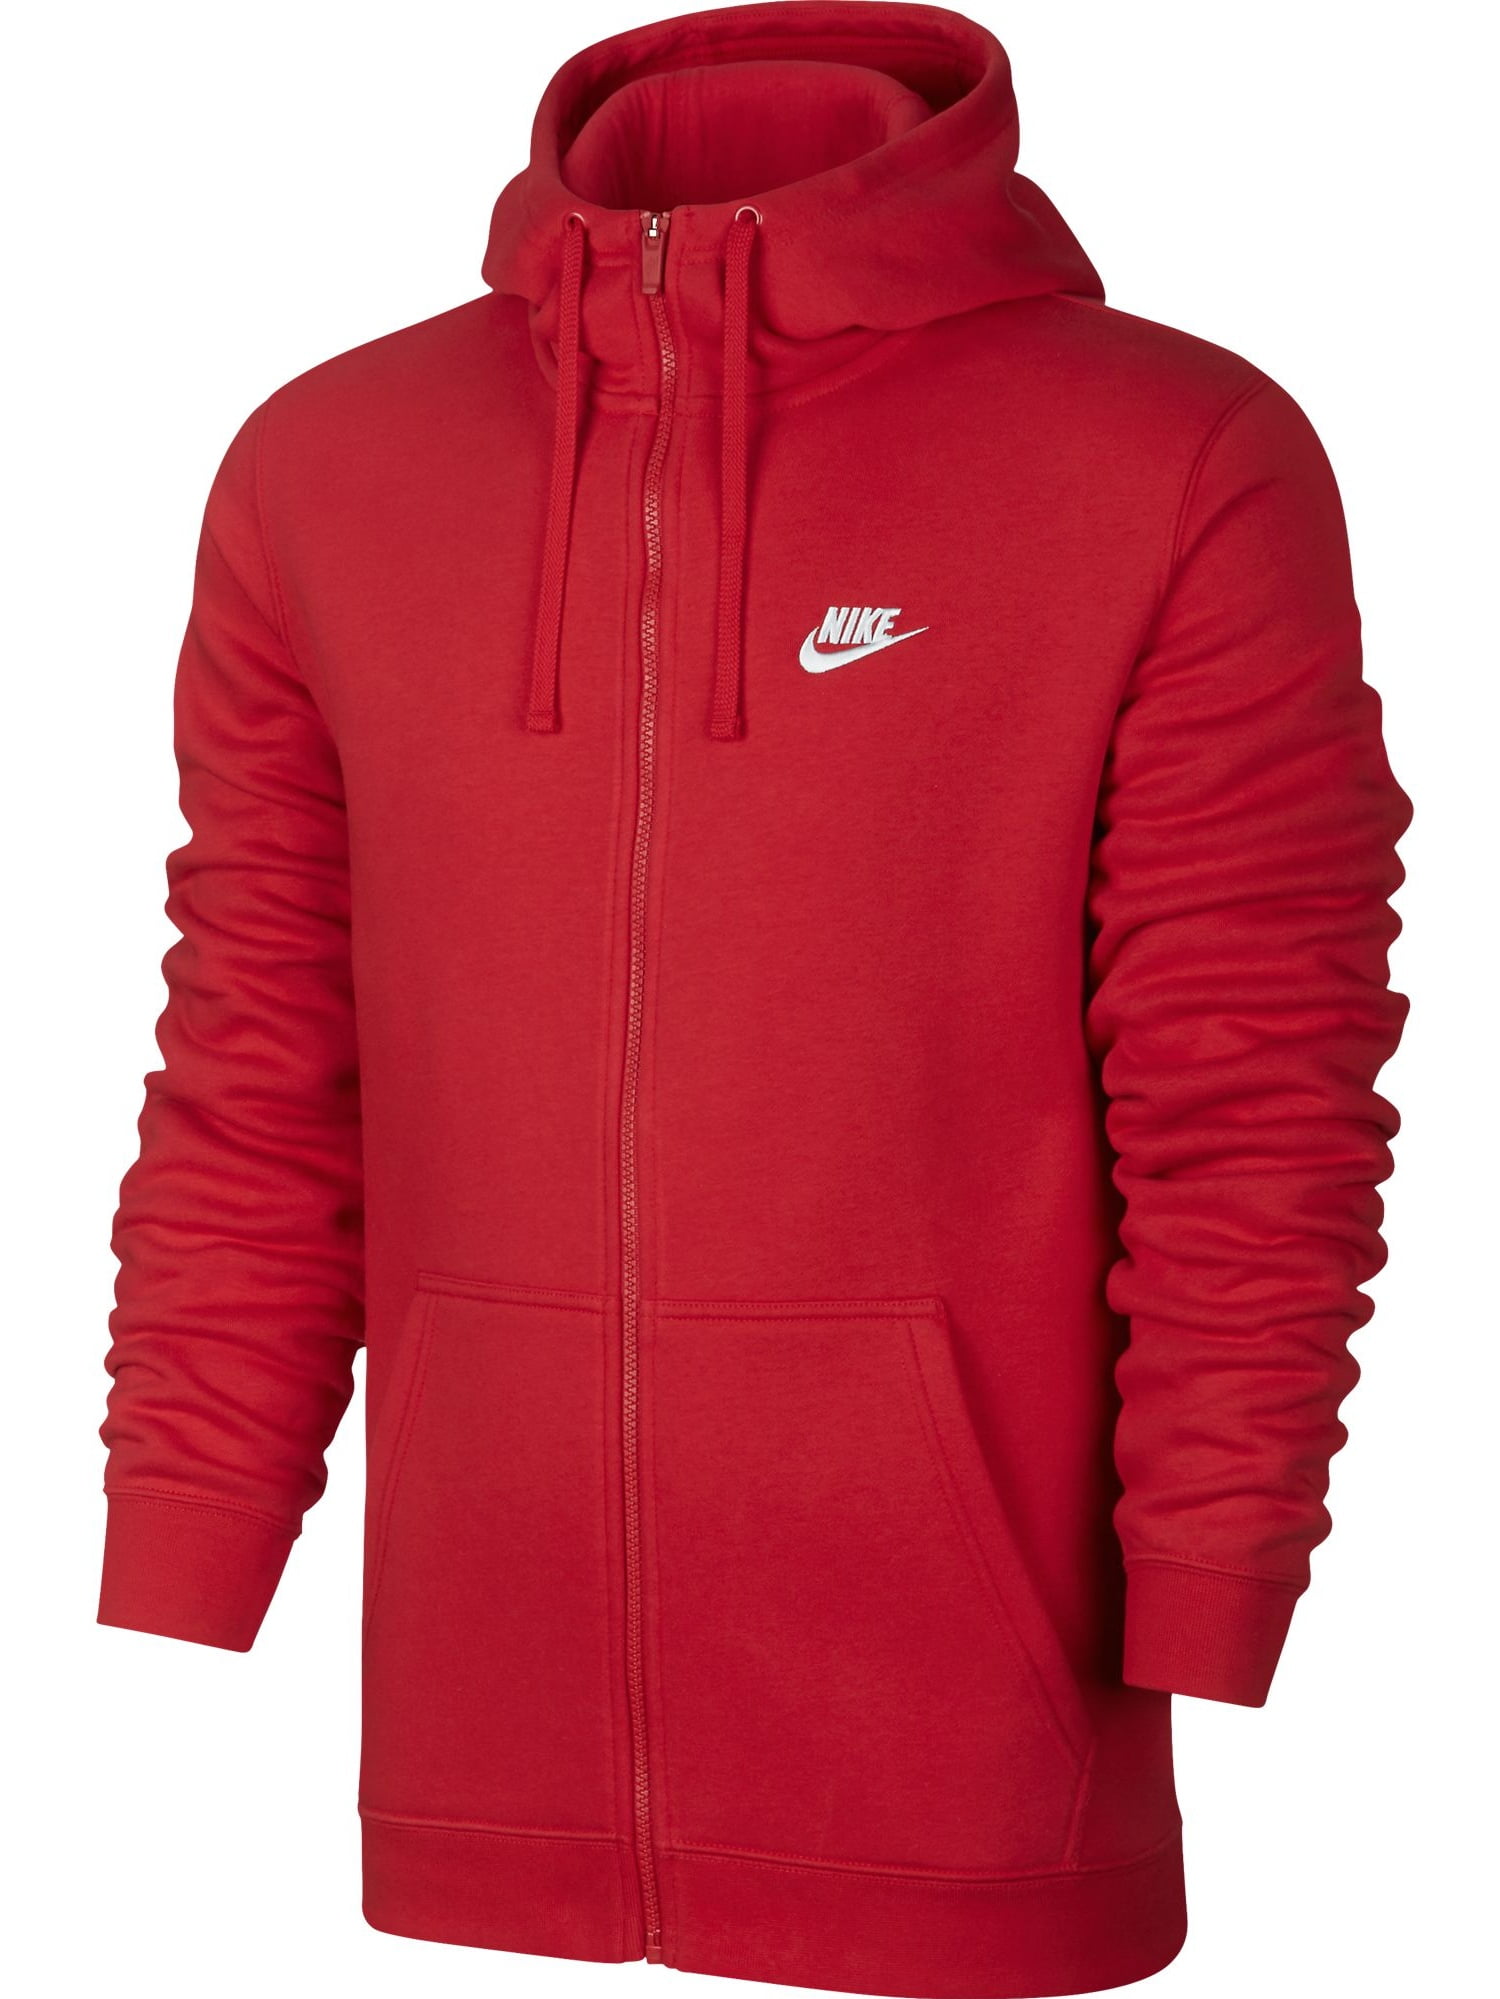 Nike Club Fleece Full Zip Longsleeve Men's Hoodie Red/White 804389-657 ...